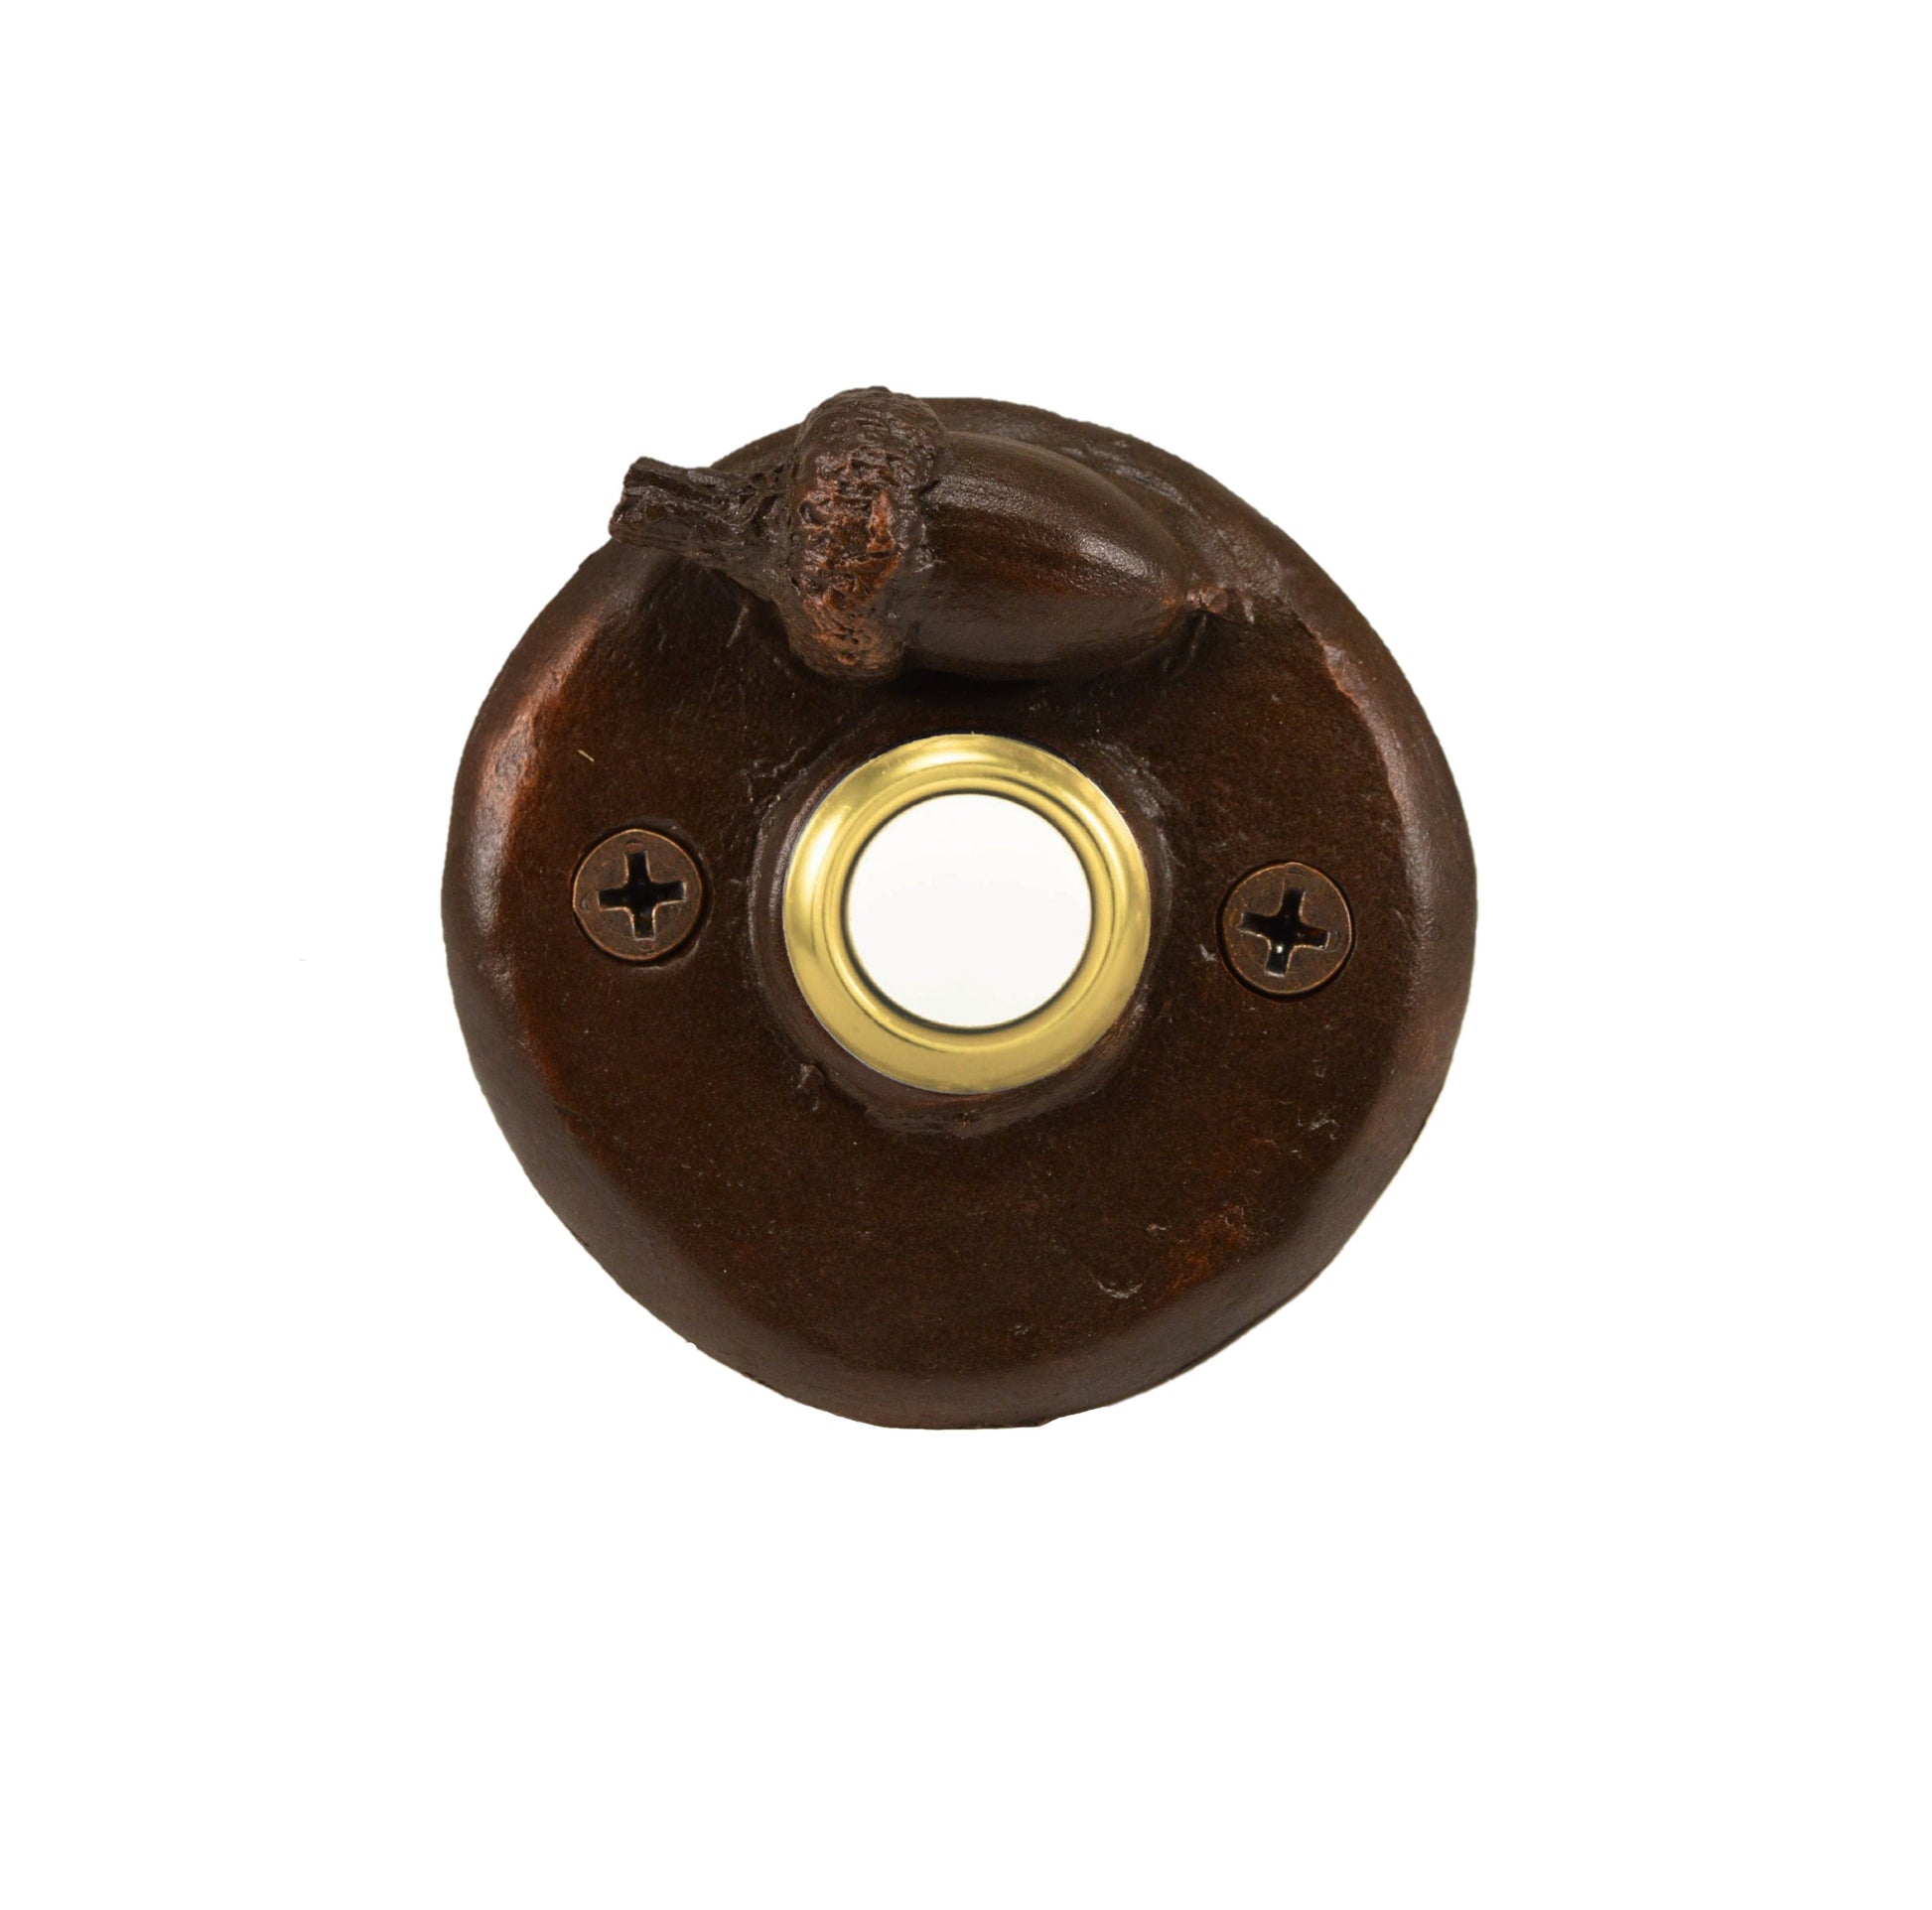 Round Doorbell with acorn